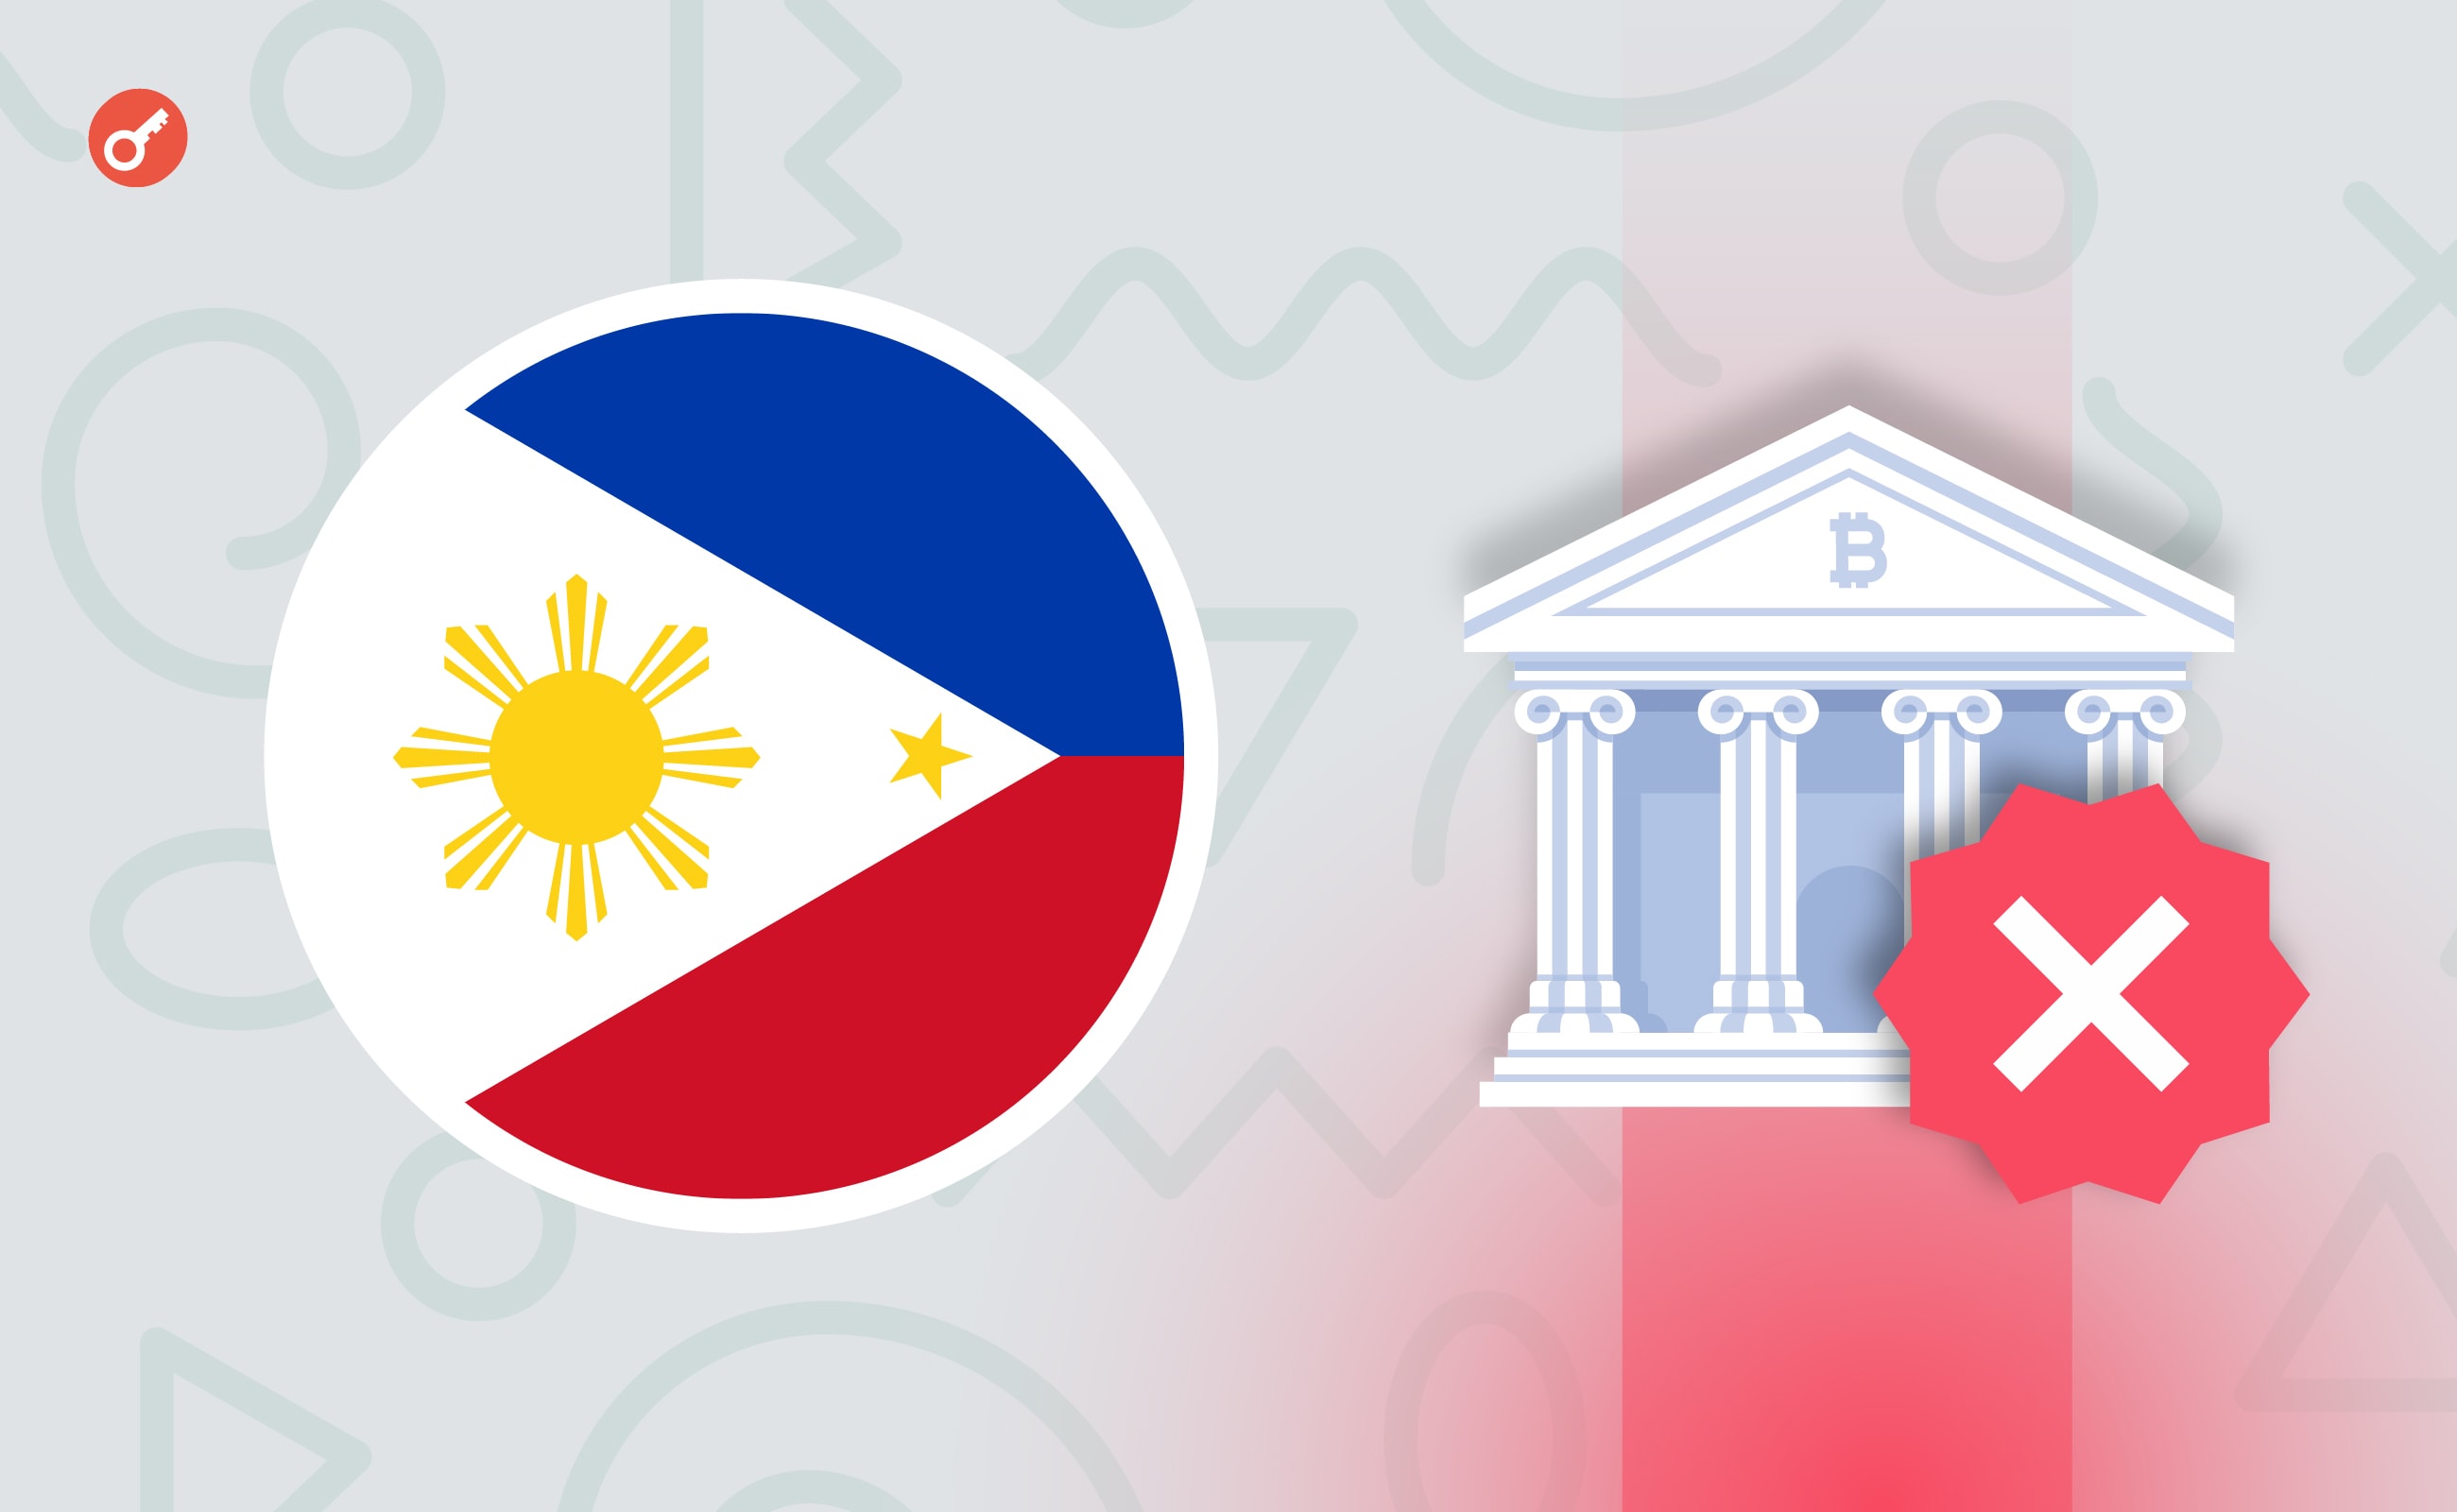 SEC Філіппін зажадала видалити застосунок Binance з AppStore і Google Play. Головний колаж новини.